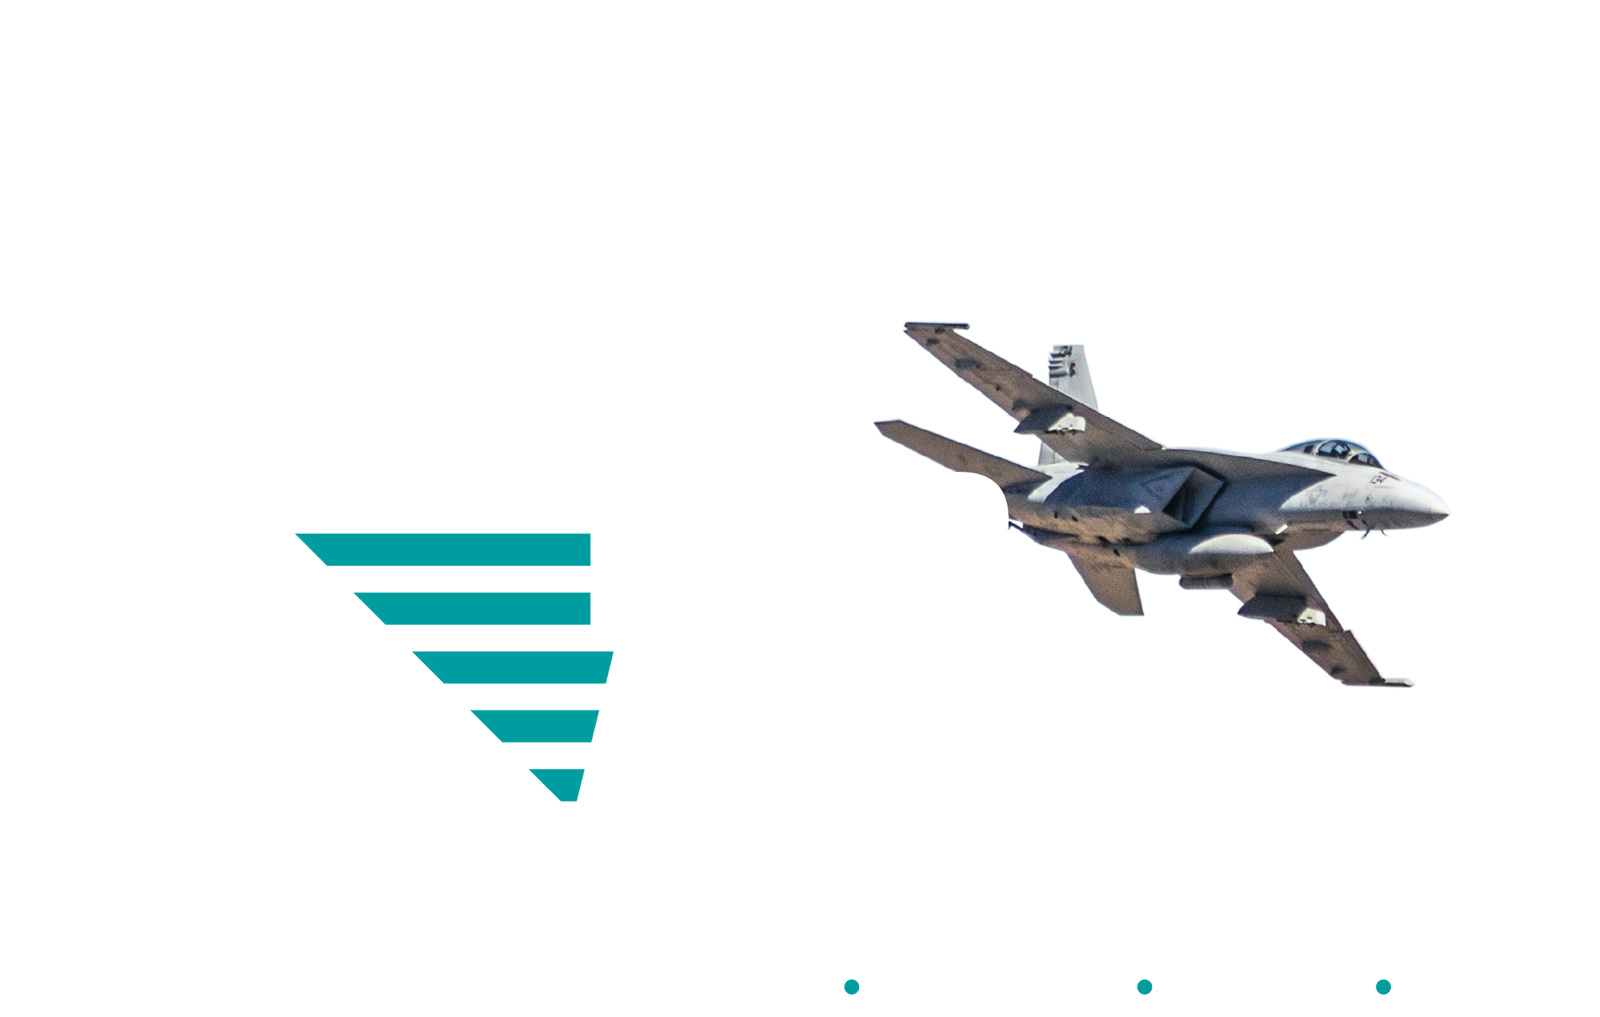 Epyc Adventure